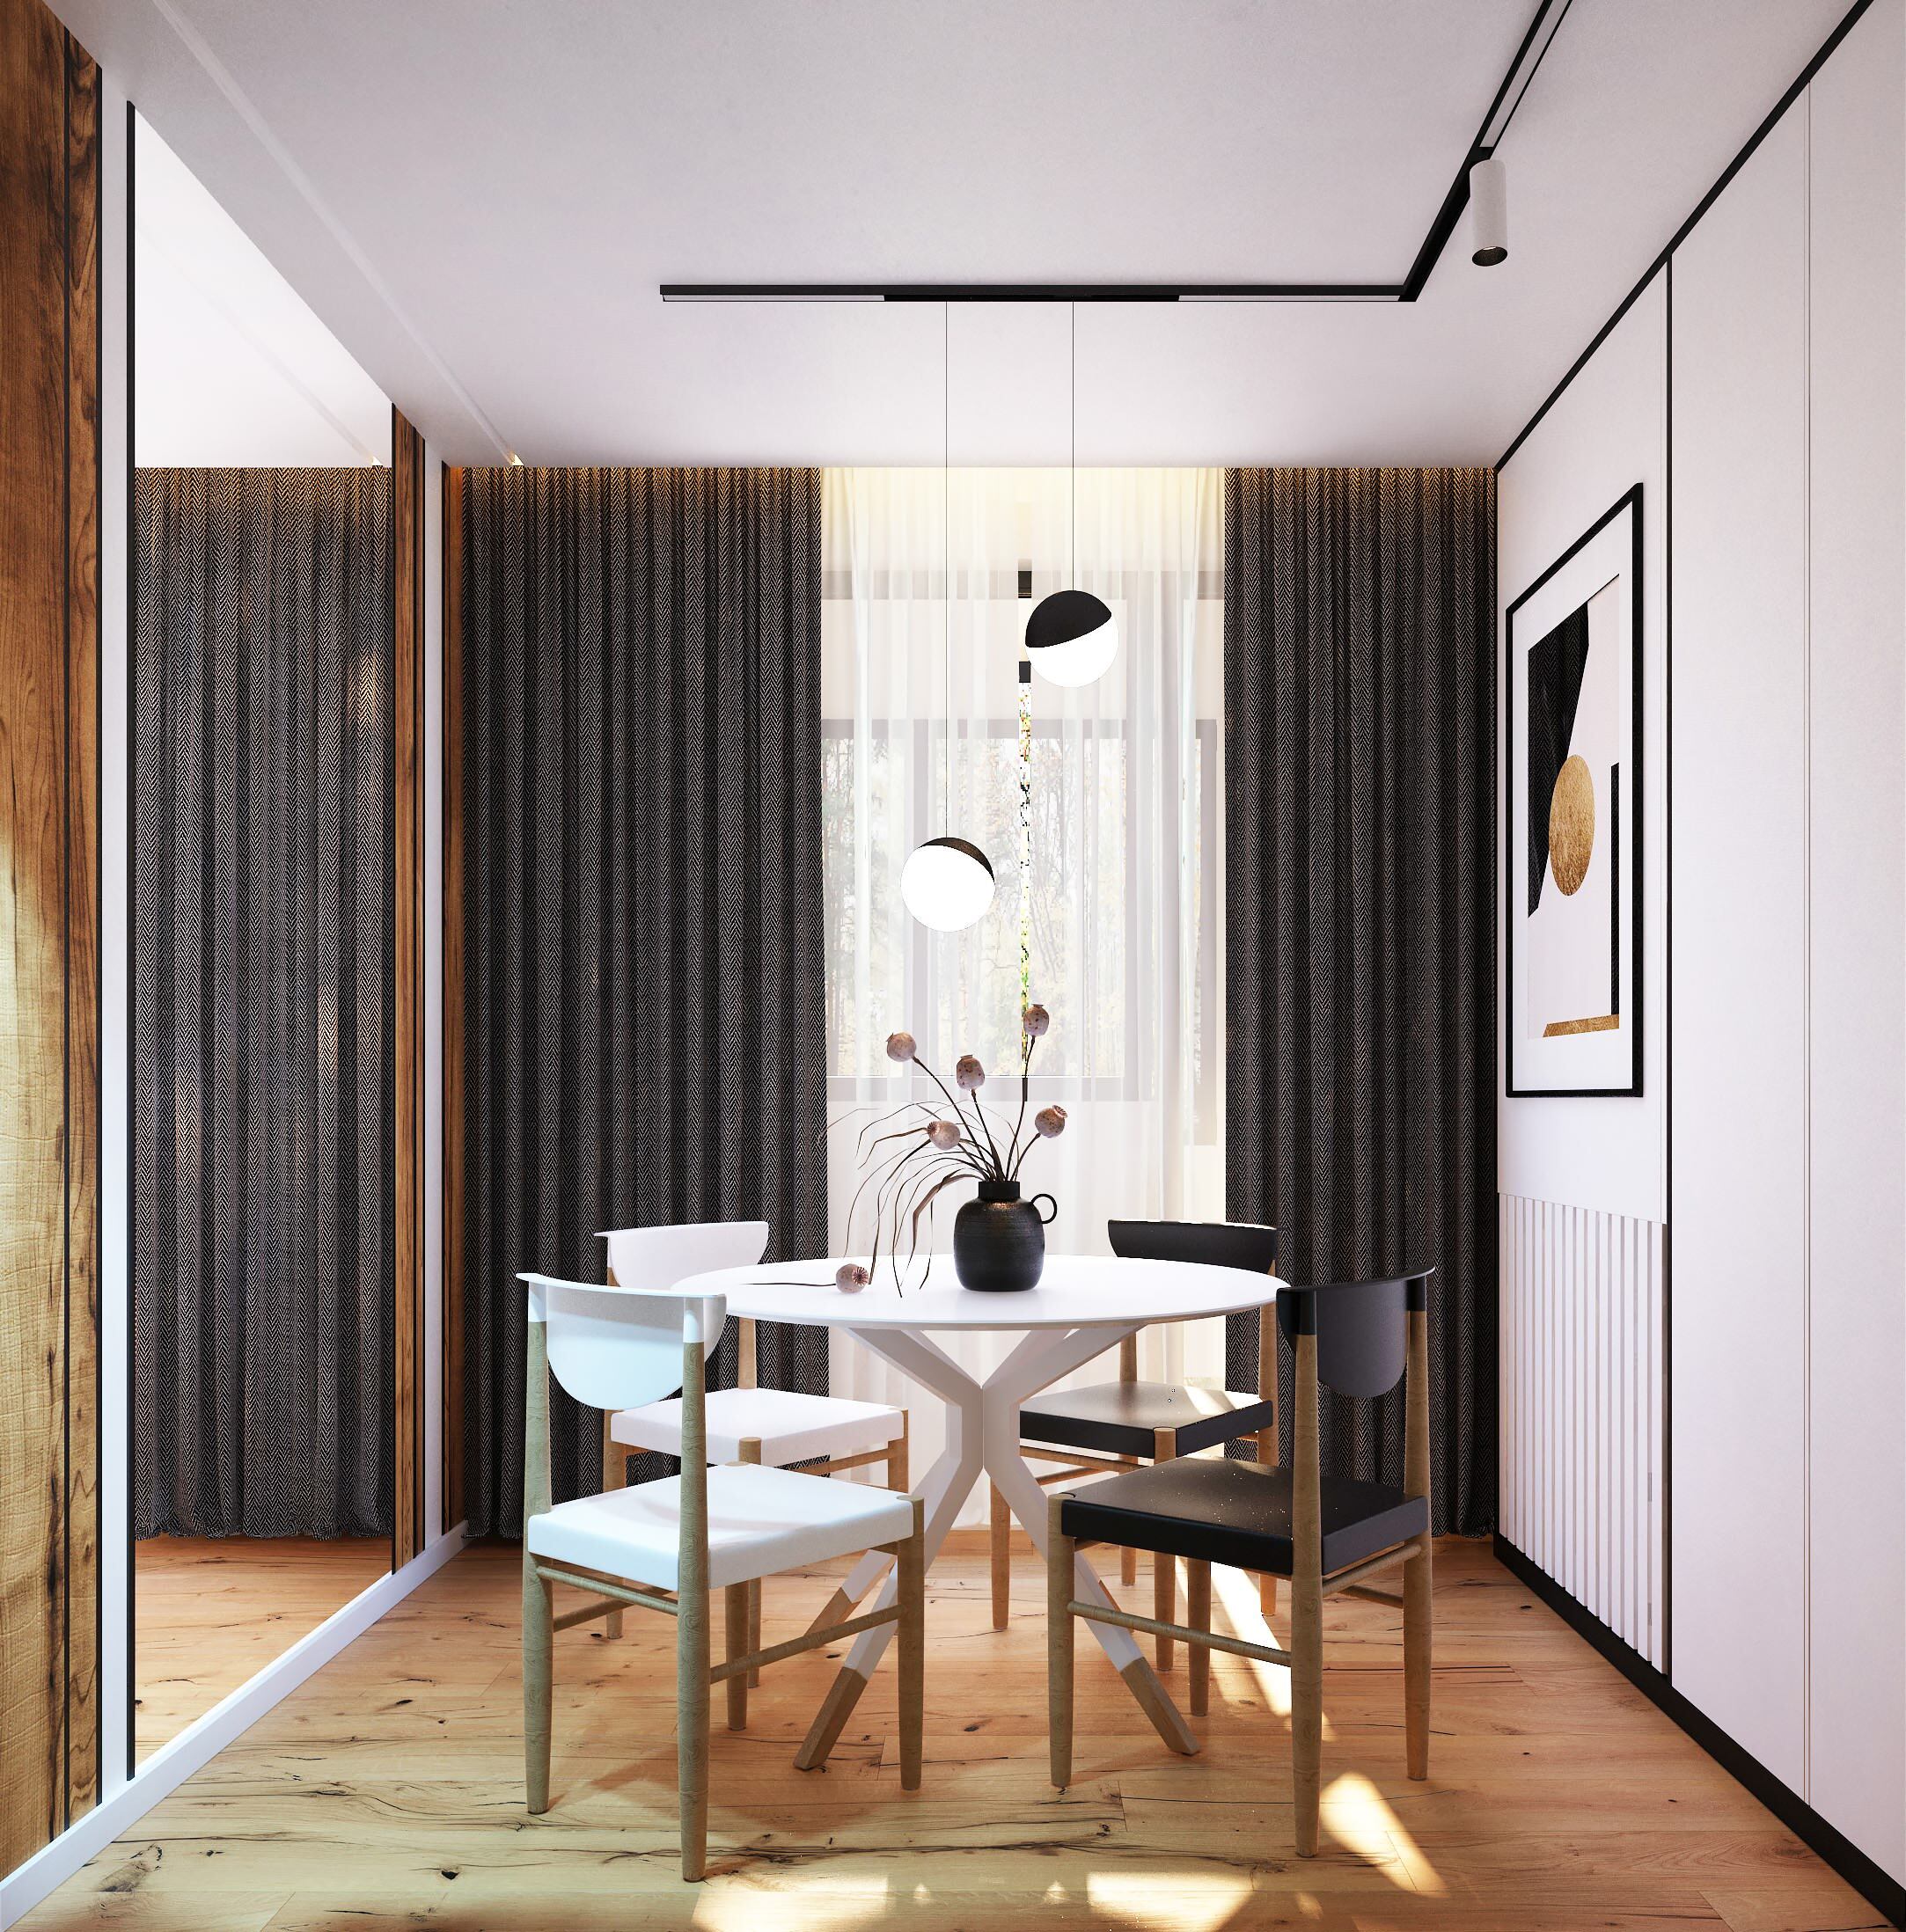 Интерьер столовой cветовыми линиями и вертикальными жалюзи в современном стиле